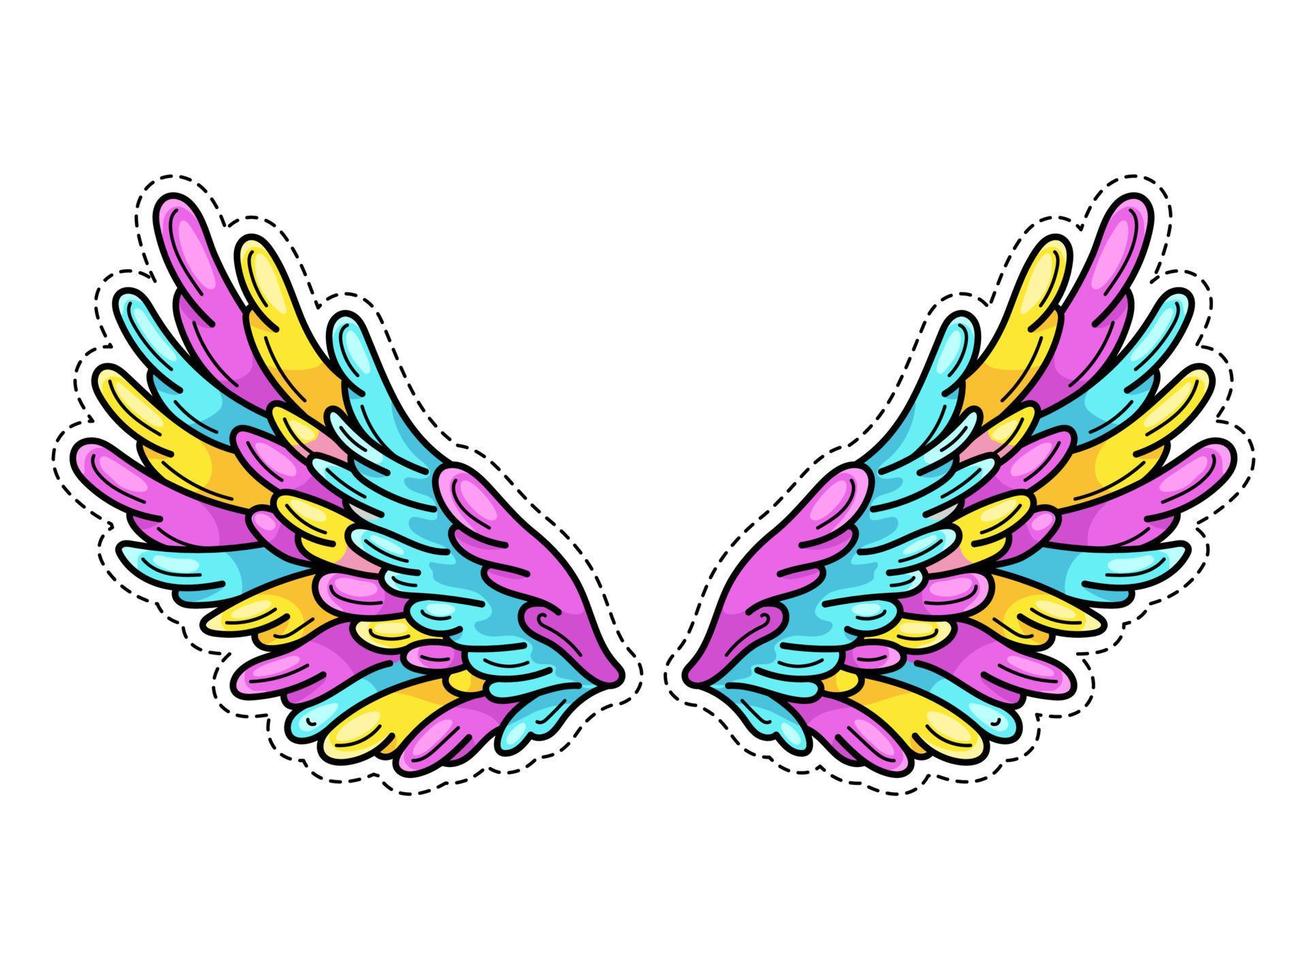 magische vleugels sticker in de jaren 80-90 jeugd popart comics-stijl. wijd gespreide engelenvleugels. retro modieus patchelement geïnspireerd op oude tekenfilms. vectorillustratie geïsoleerd op wit. vector